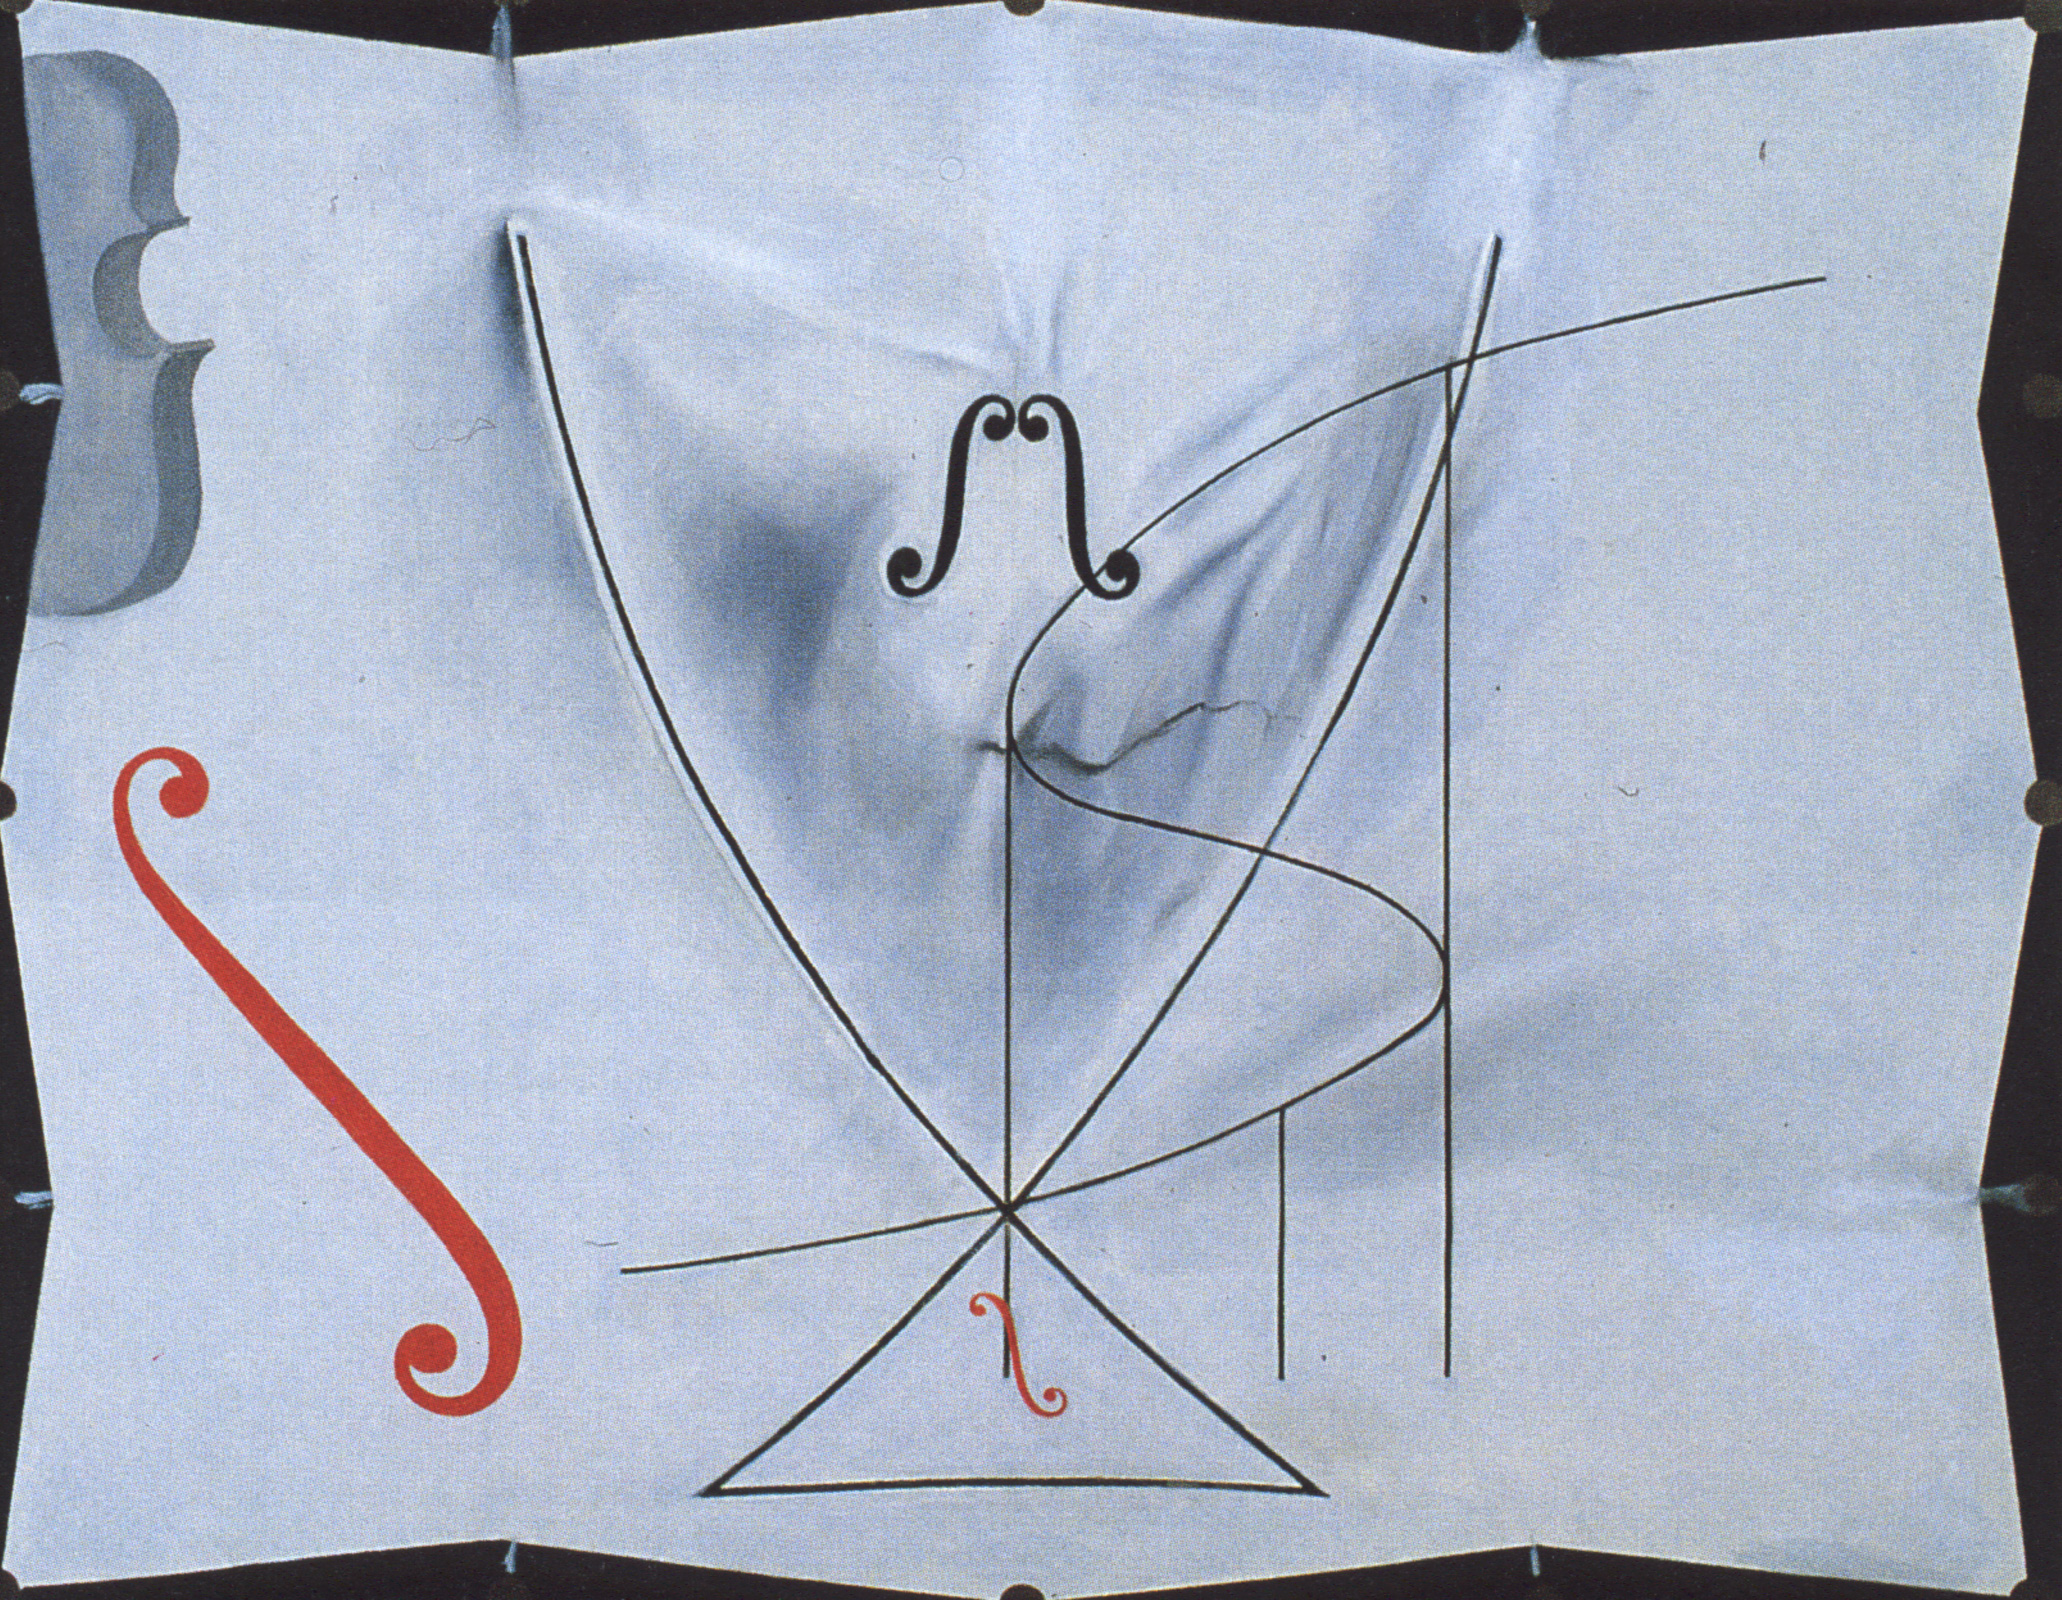 A Cauda da Andorinha by Salvador Dalí - 1983 - 73 x 92.2 cm 